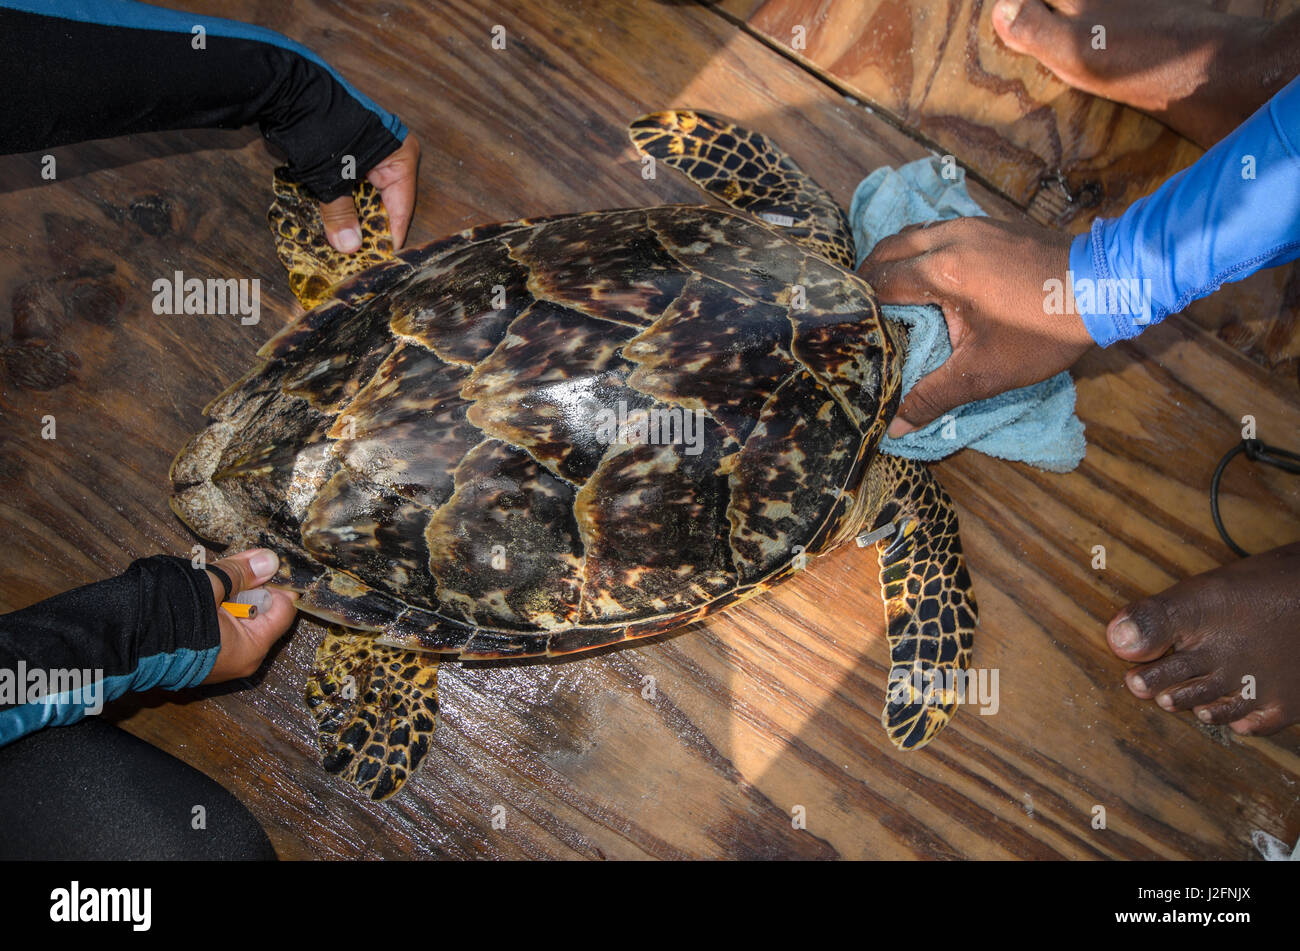 Capture de la tortue imbriquée (Eretmochelys imbricata) de surveillance annuelle, MarAlliance, Lighthouse Reef Atoll, Belize, (MR) Banque D'Images